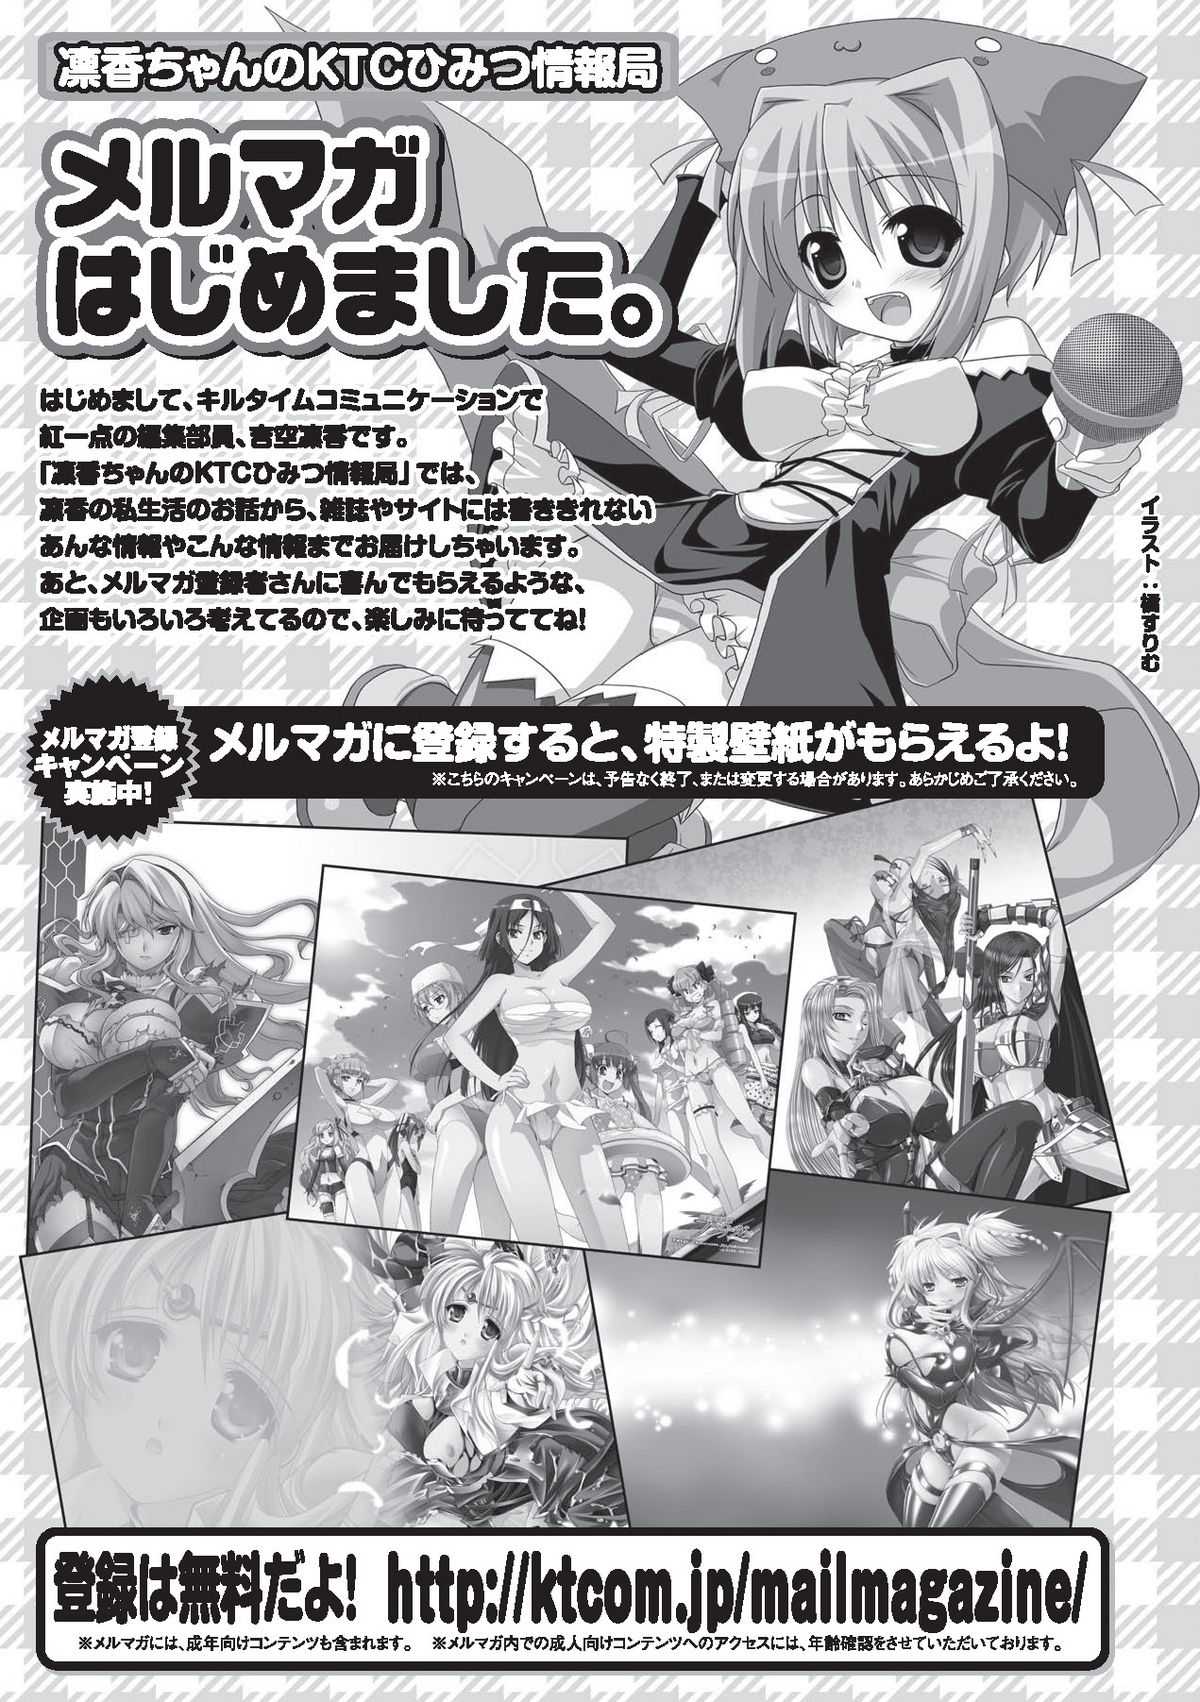 Acme Face Anthology Comics Vol.2 [キルタイムコミュニケーション]アヘ顔アンソロジーコミックスVol.2